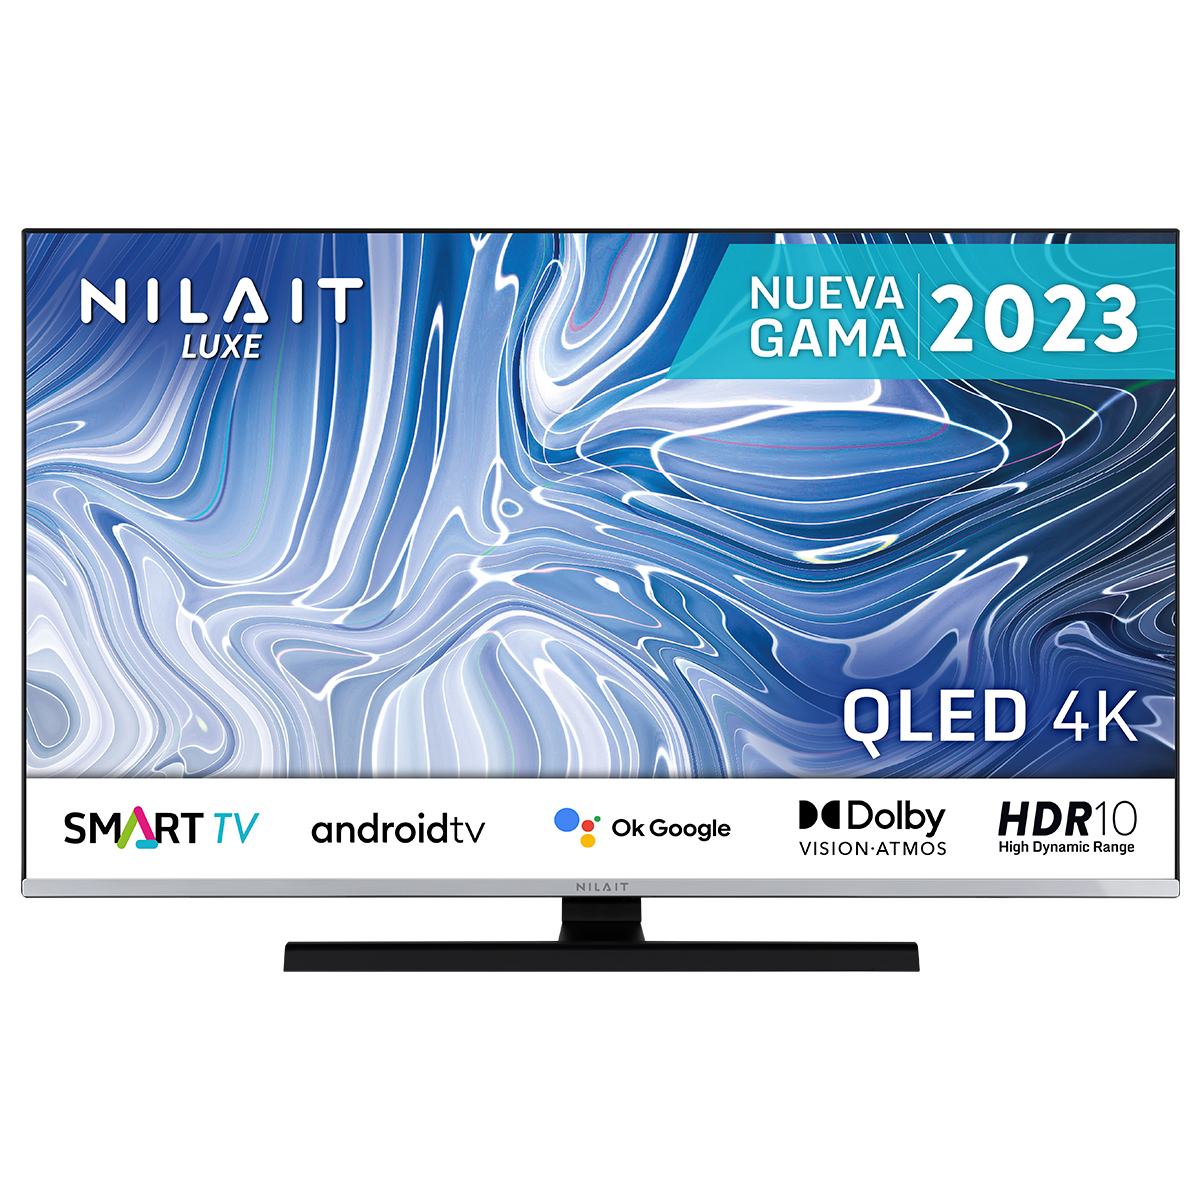 Nilait Luxe NI-55UB8002S 55″ QLED UltraHD 4K HDR10 MEMC SUBWOOFER